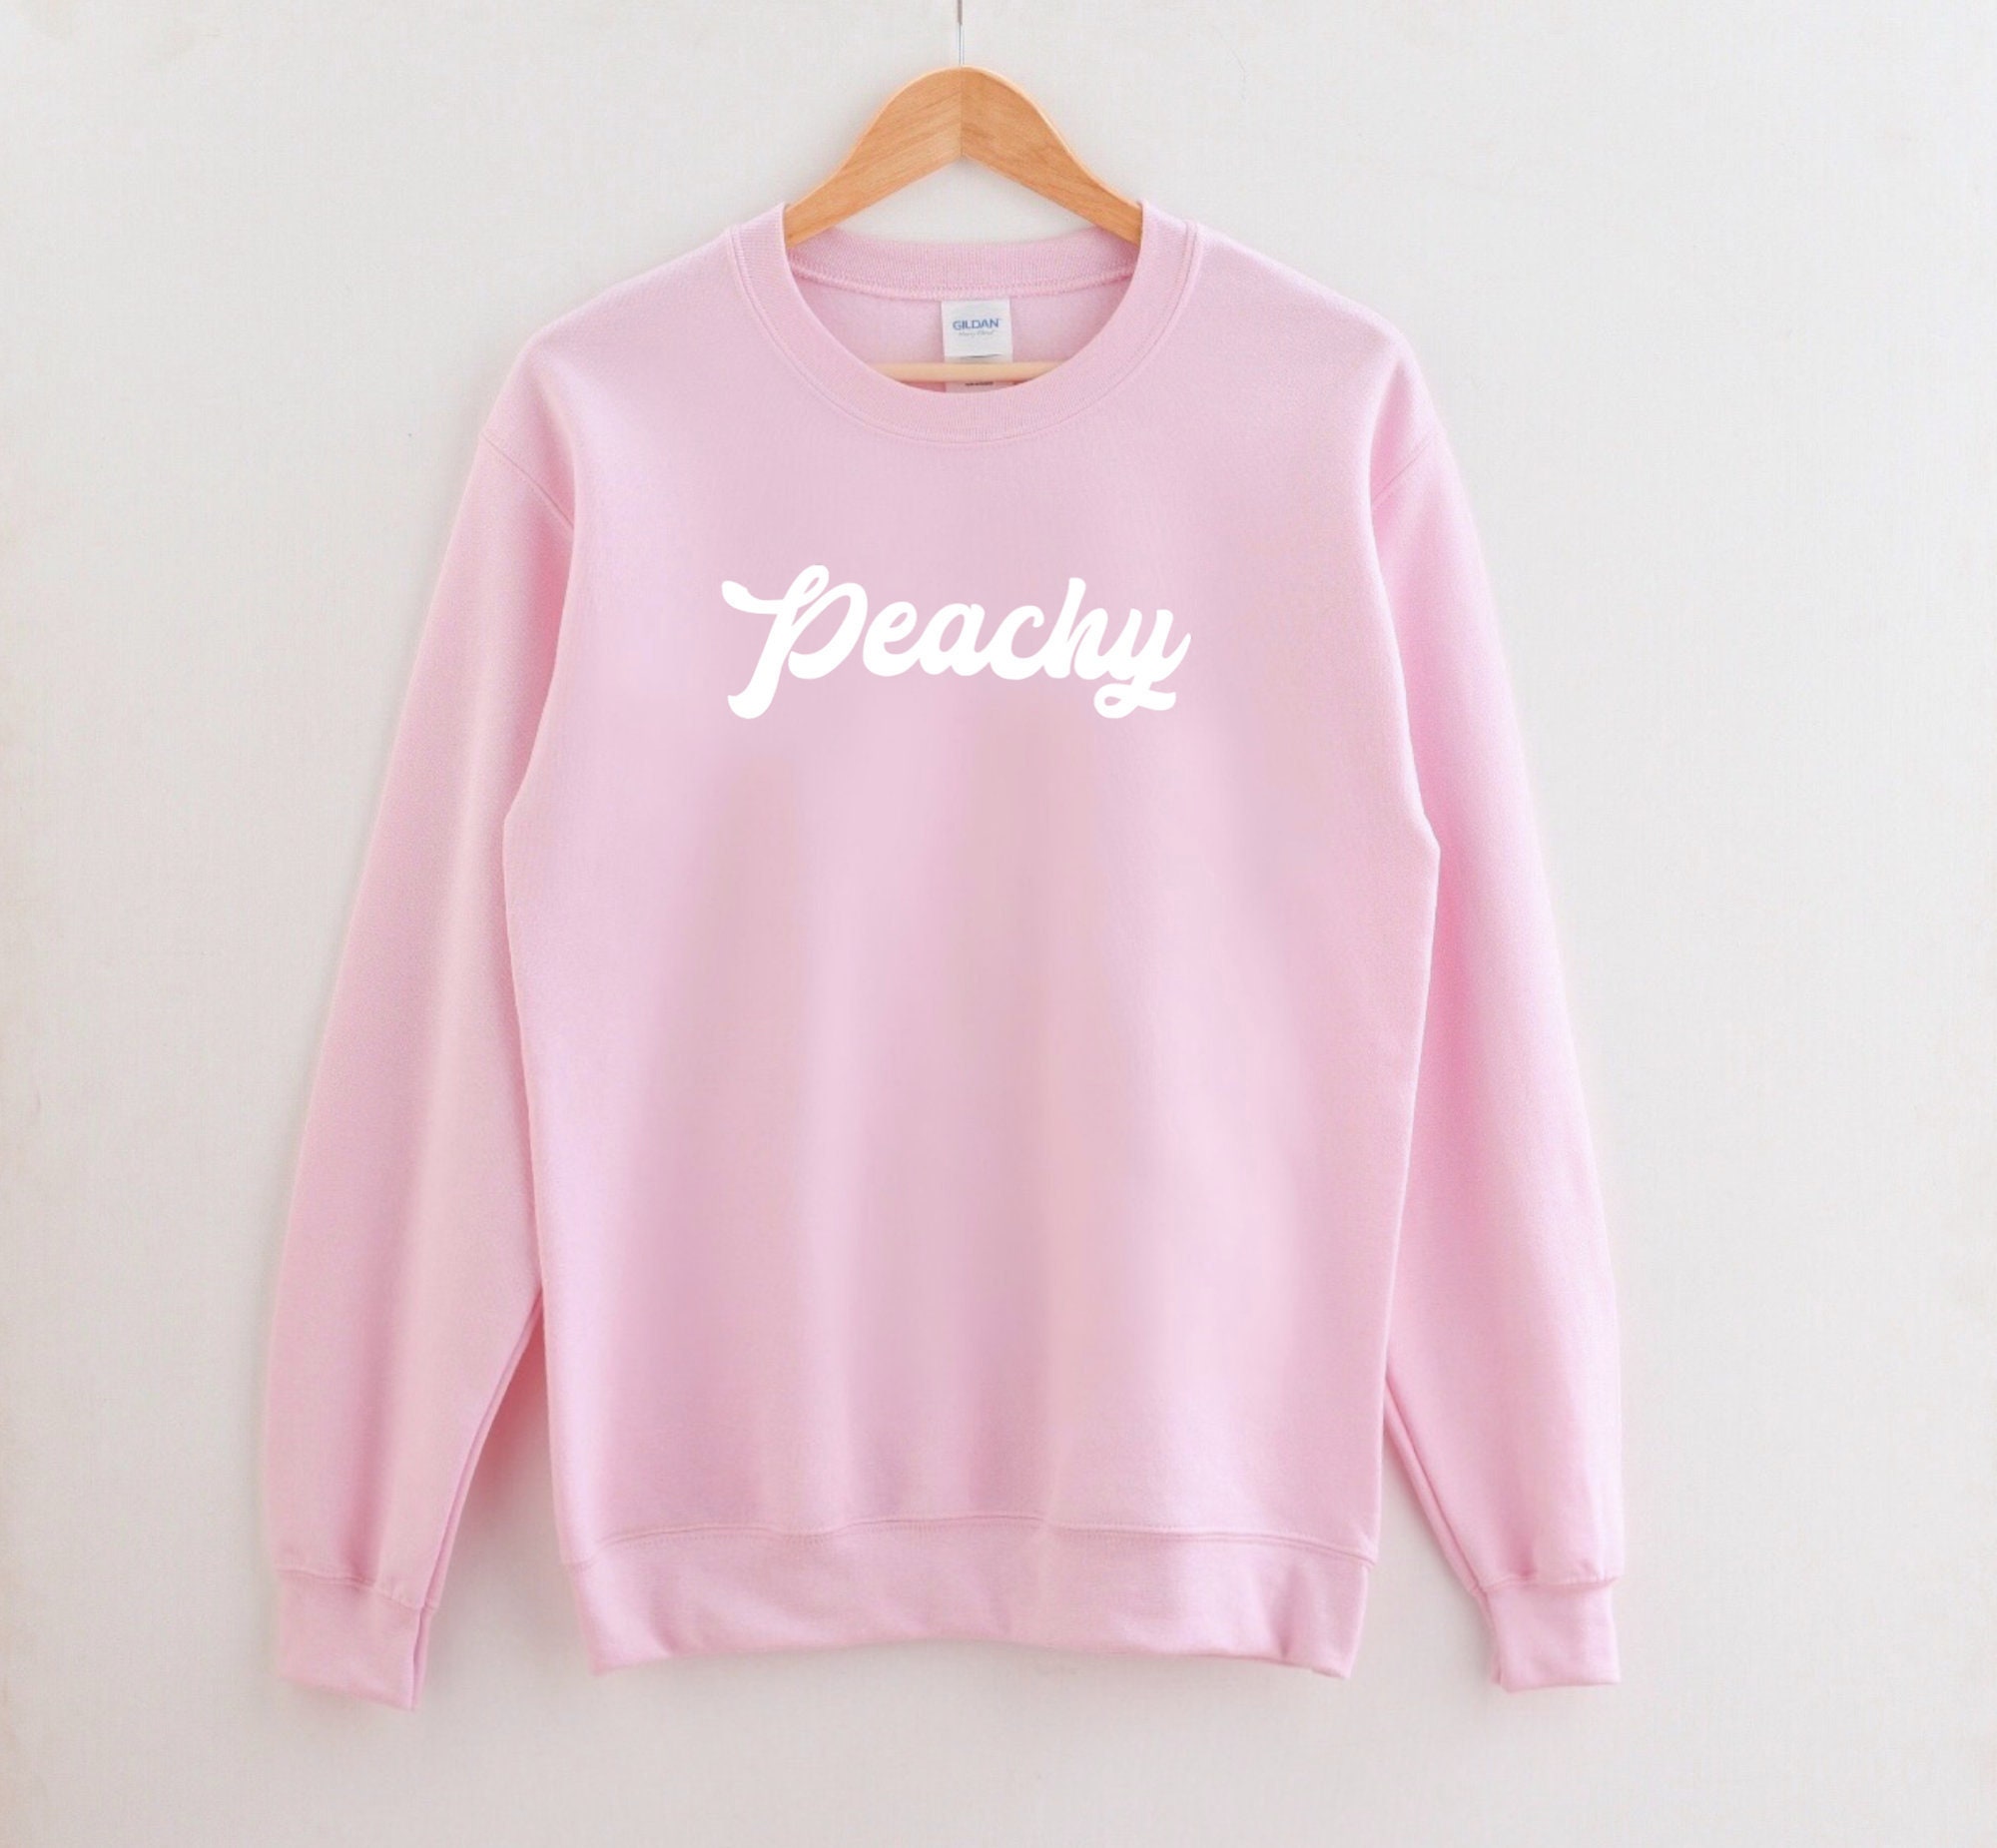 Peachy Sweatshirt Retro Peachy Shirt Peachy Tshirt 70s | Etsy